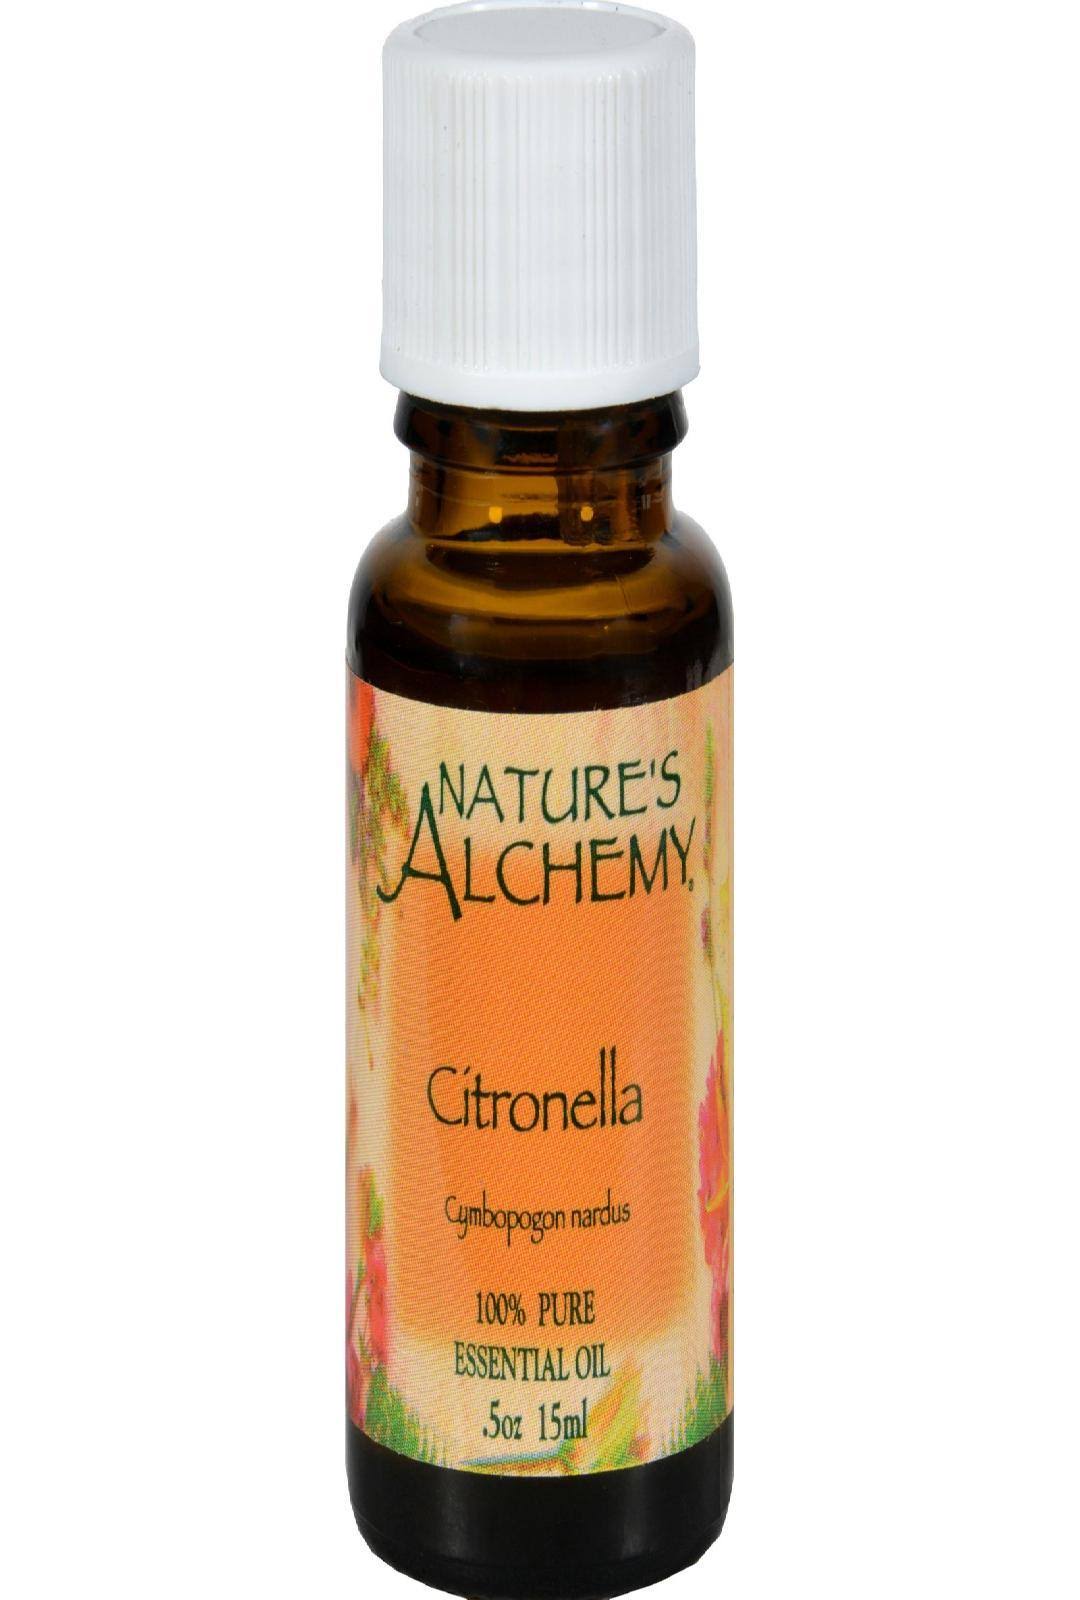 Nature's Alchemy 100% Pure Essential Oil - Citronella, 0.5oz